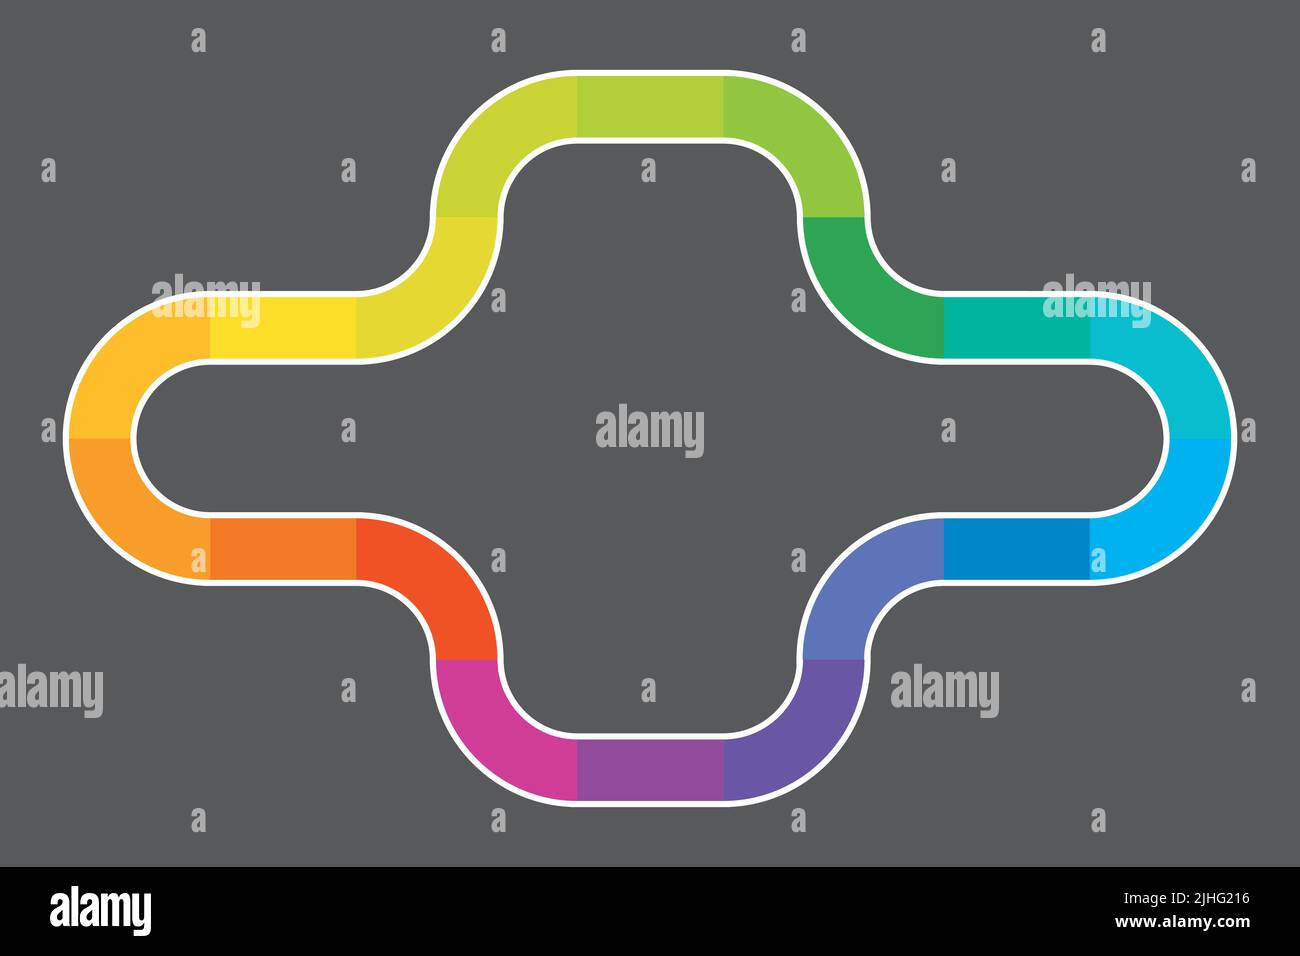 Design del percorso arcobaleno multicolore simile al tabellone di gioco. Illustrazione vettoriale del tracciato colorato su sfondo bianco, con inizio verde e stop rosso. Illustrazione Vettoriale